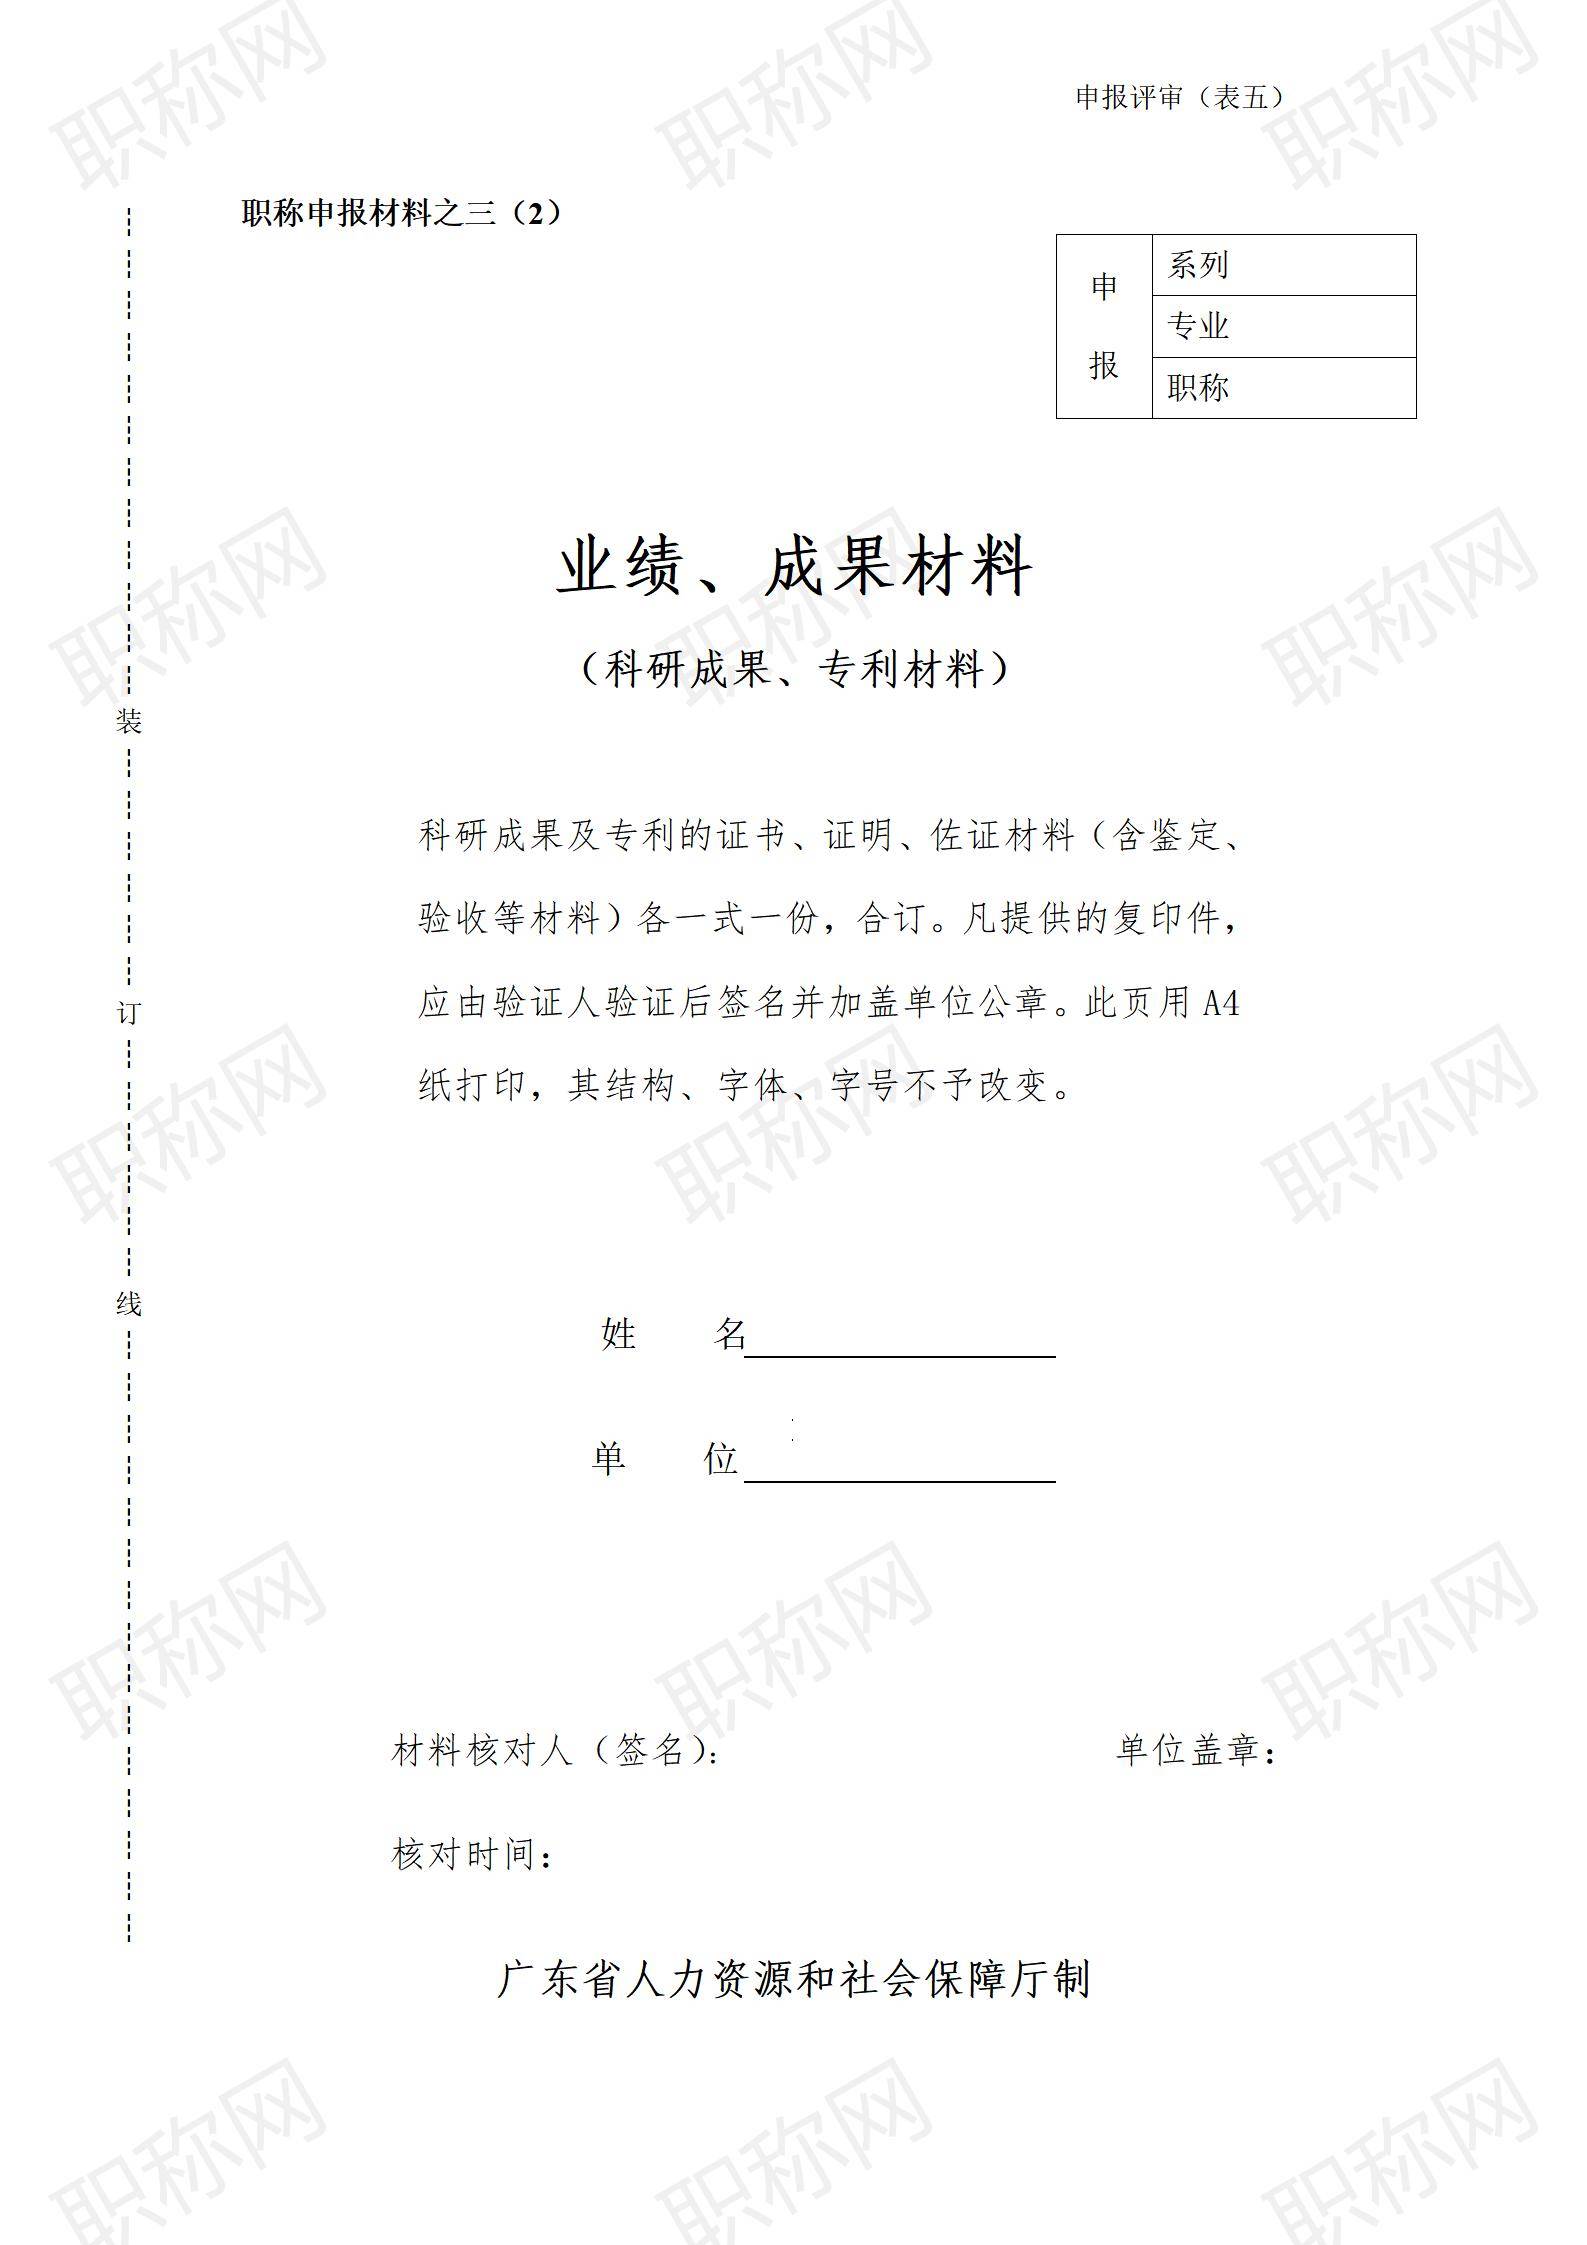 广东省职称评审业绩及成果材料填写表_02.jpg